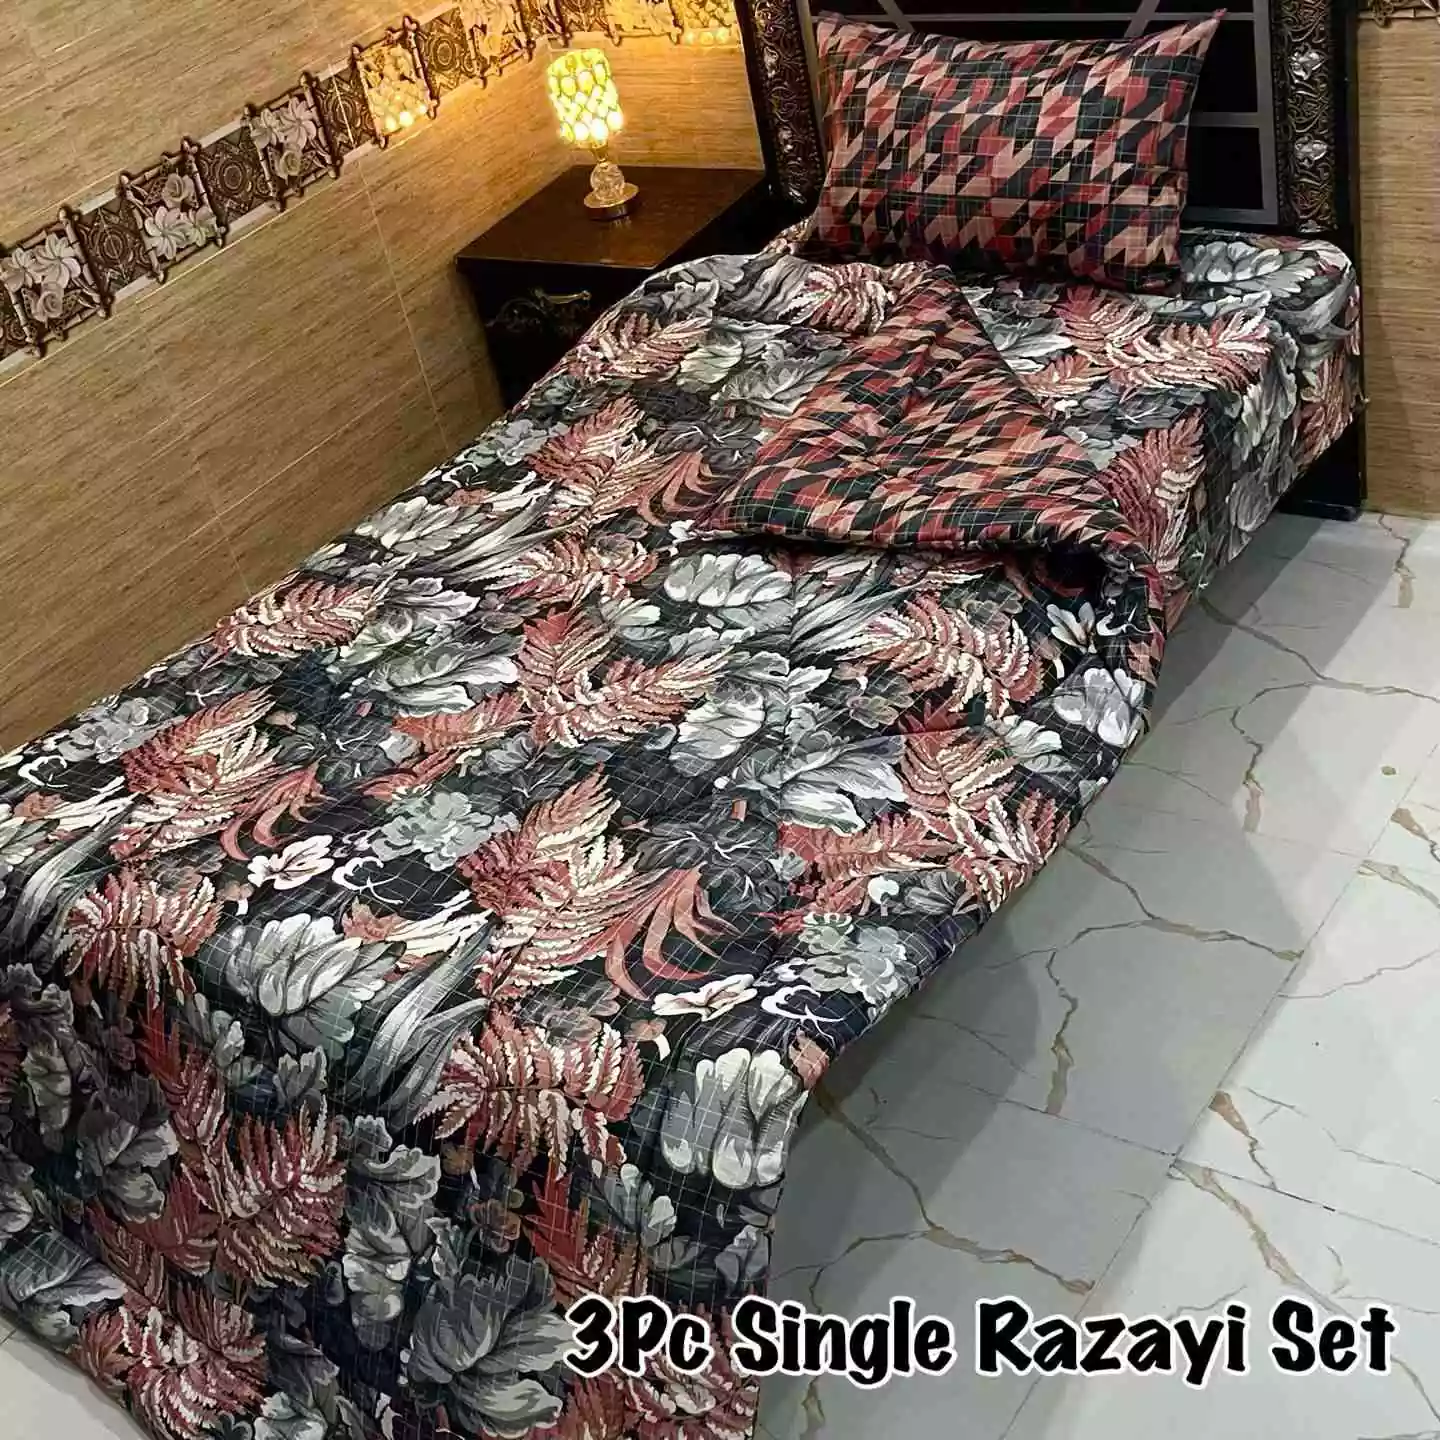 DF-VRSSB-9: DFY 3Pc Single Bed Vicky Razai Set